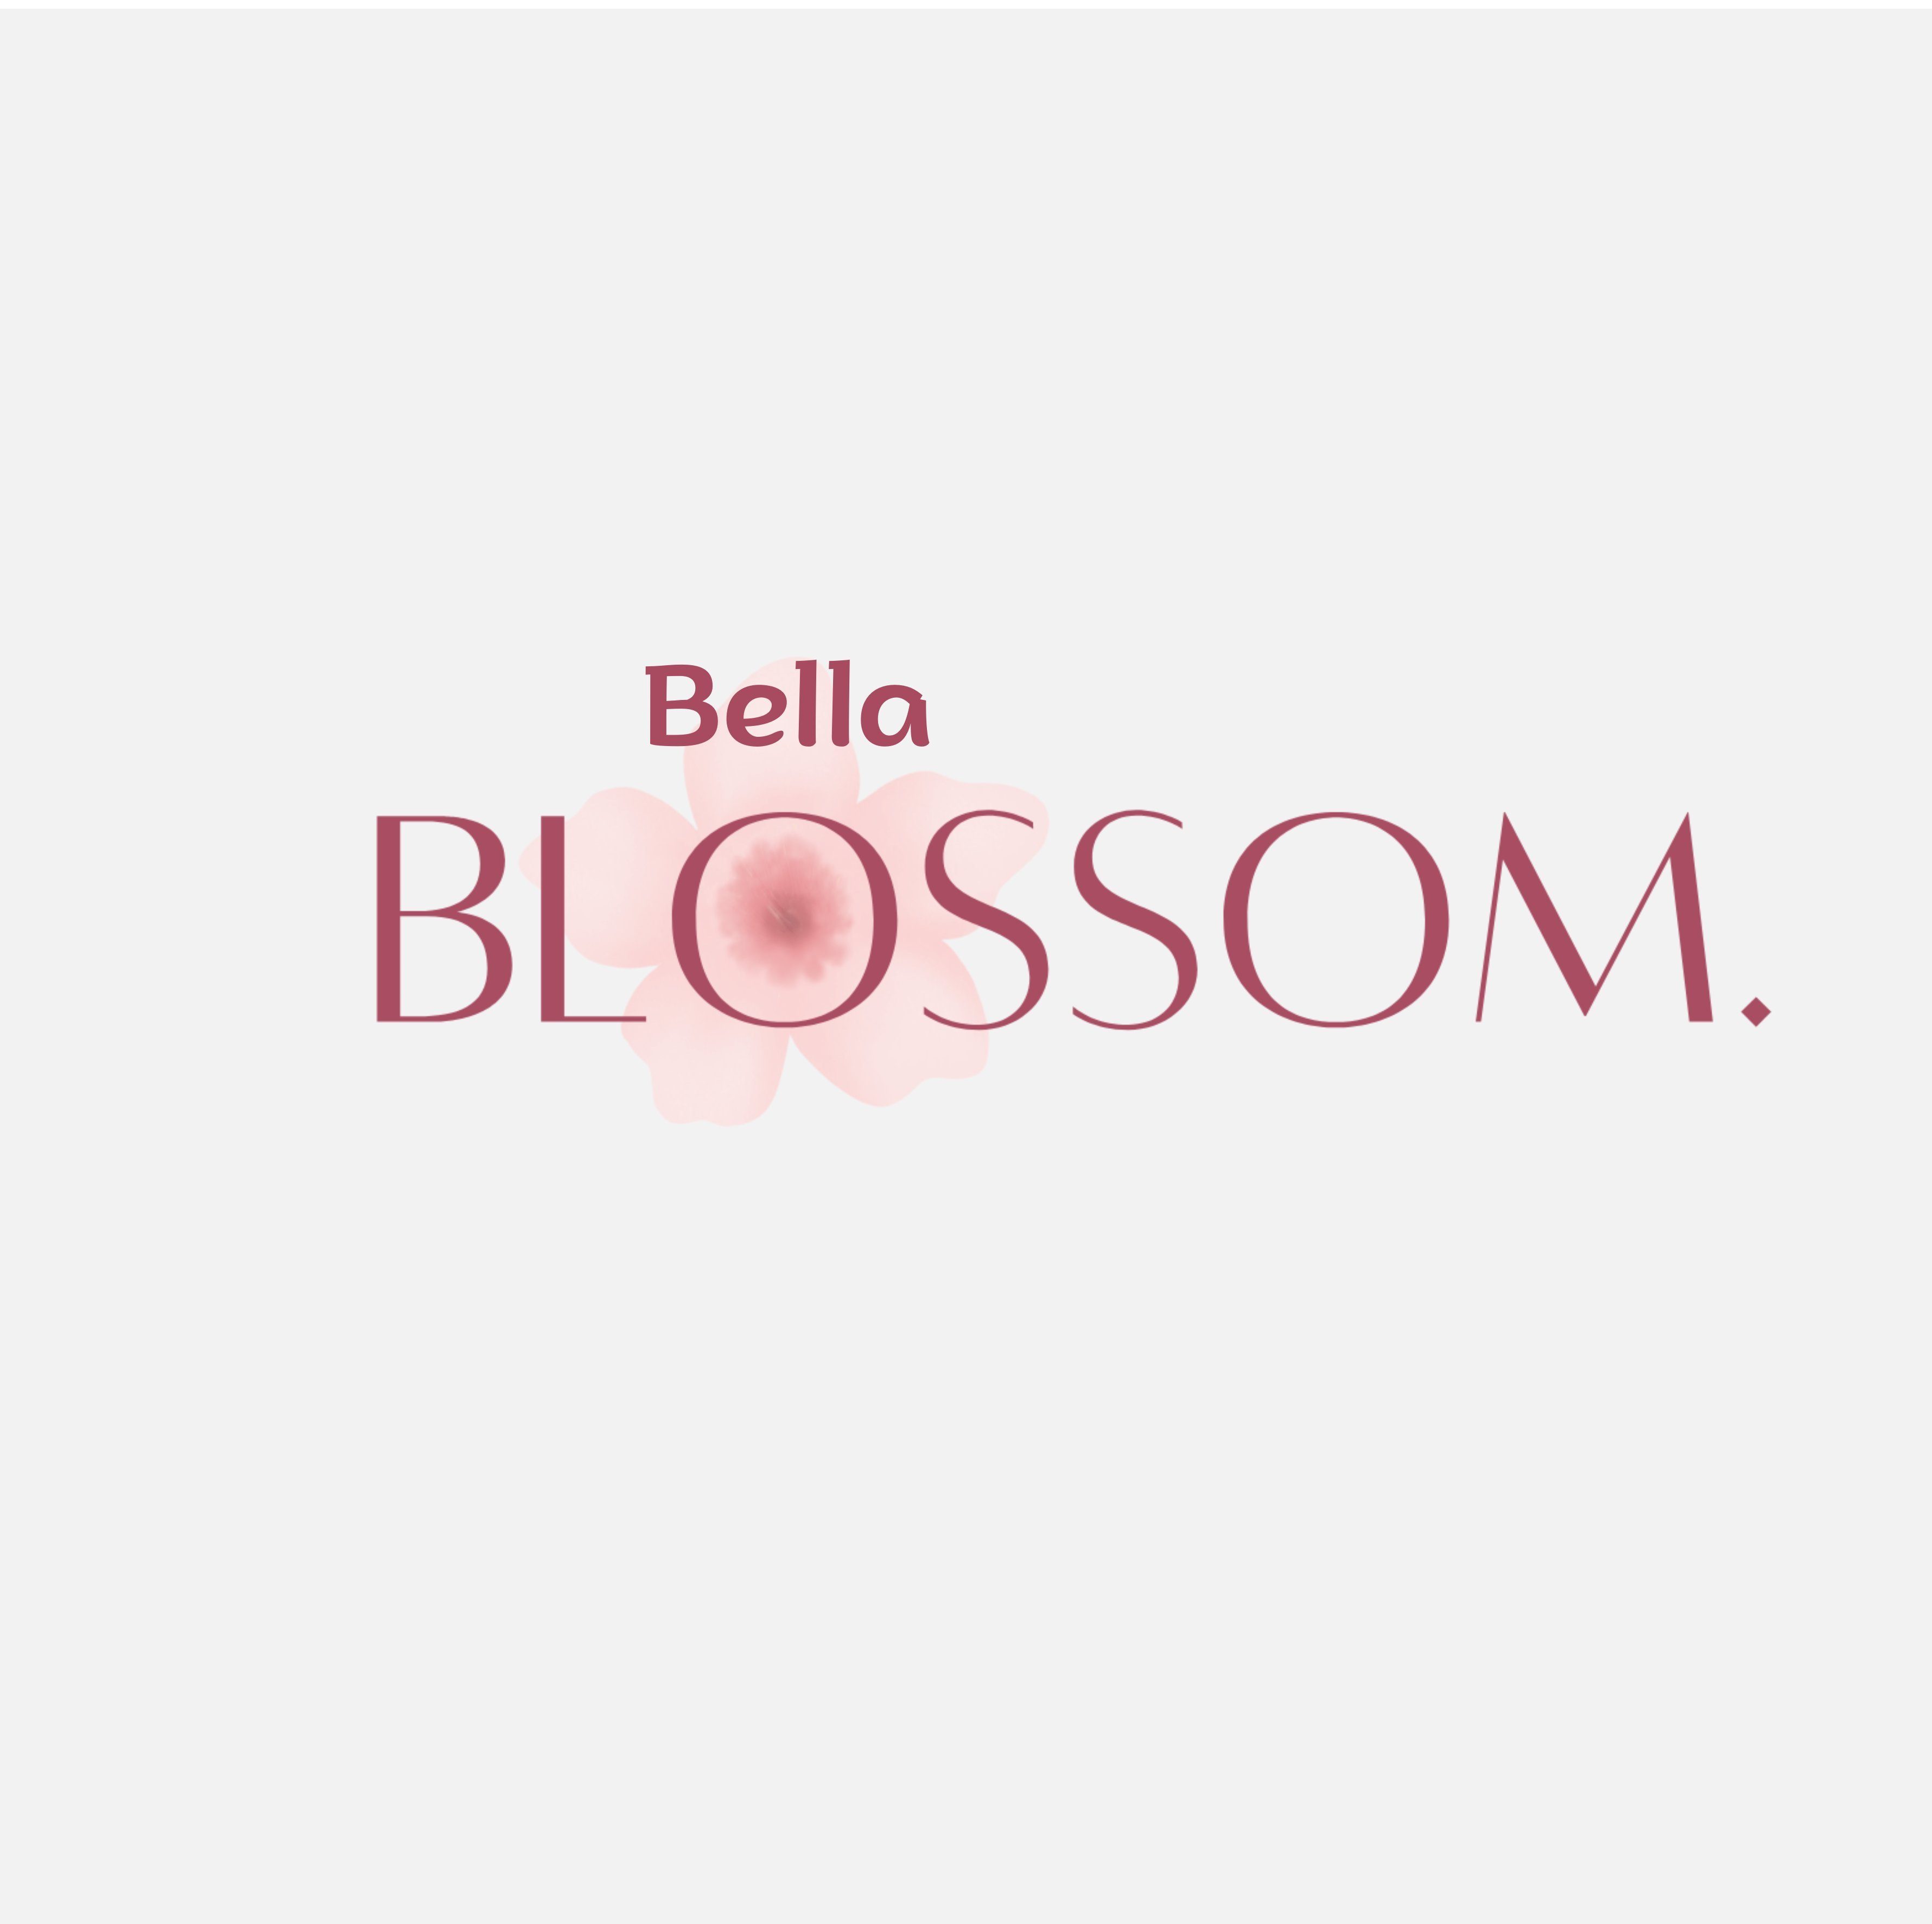 Bella Blossom